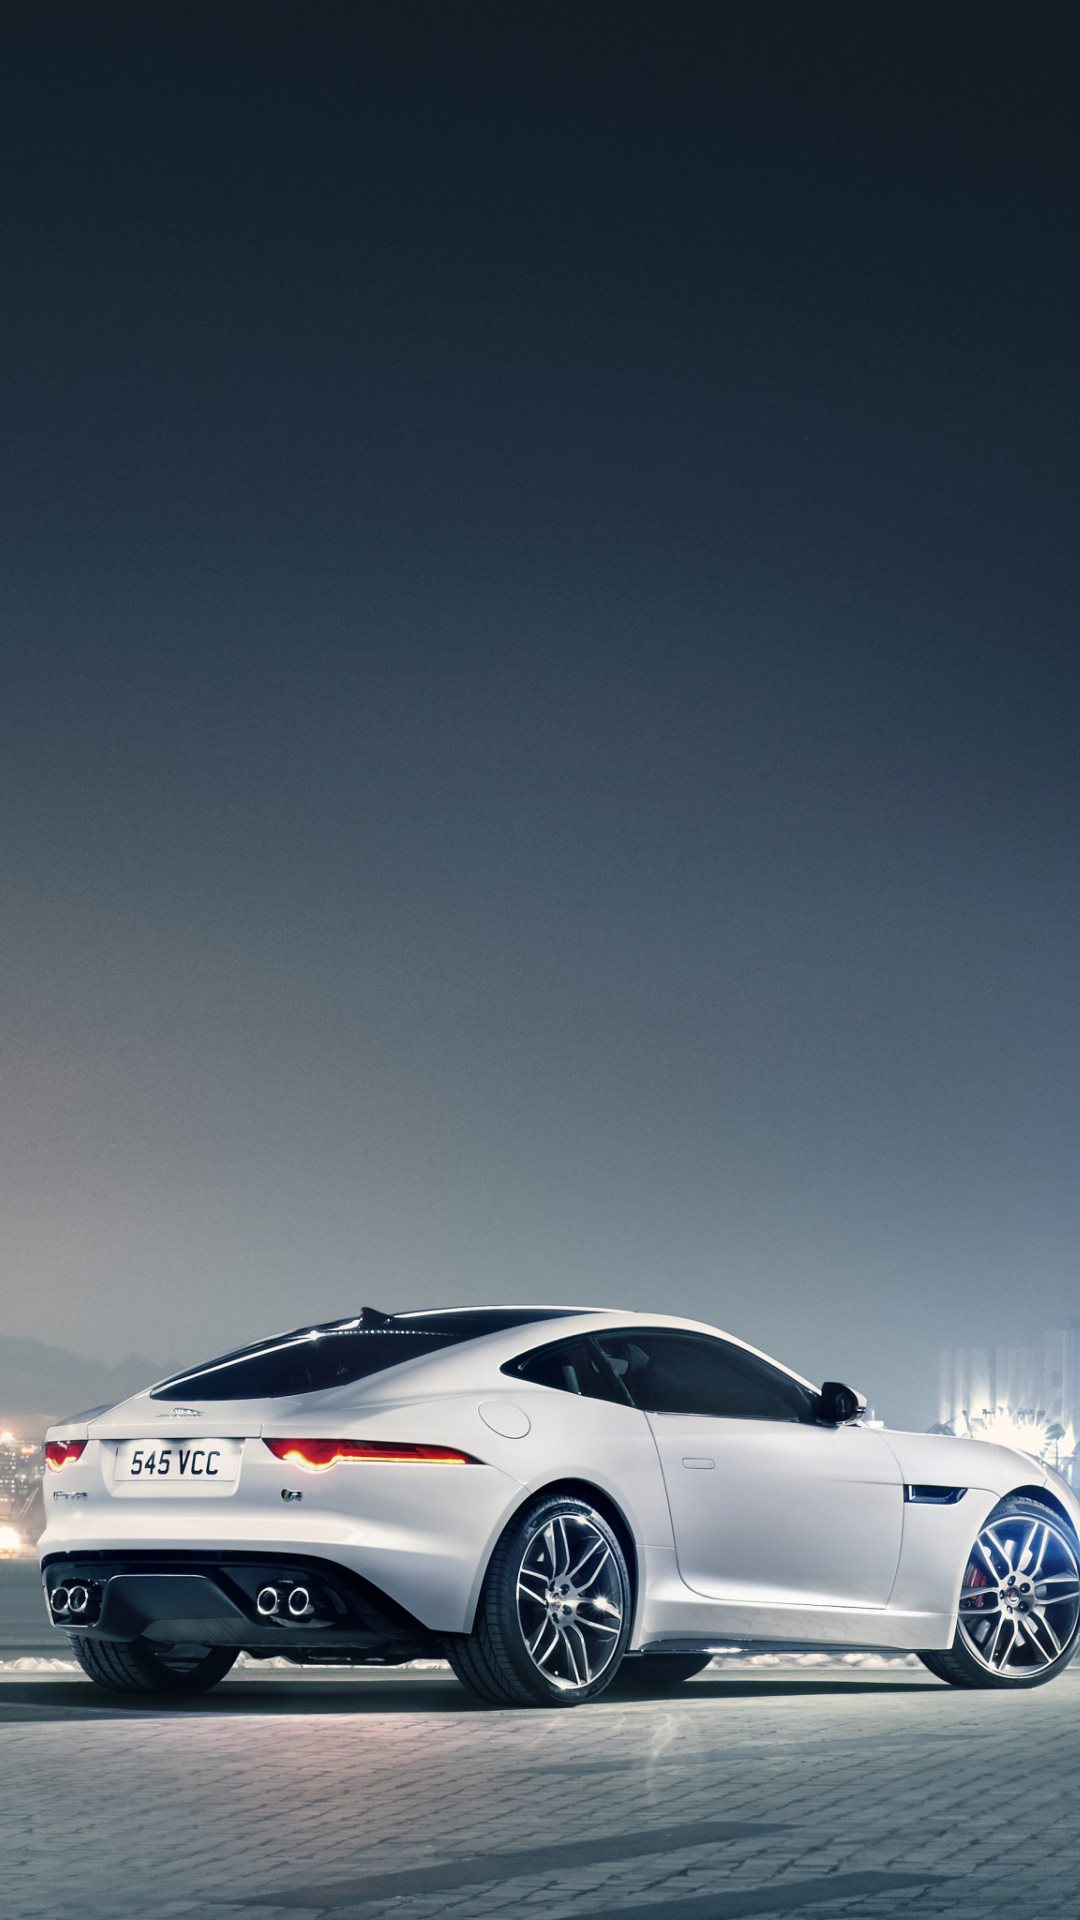 jaguar iphone wallpaper,land vehicle,vehicle,car,automotive design,personal luxury car